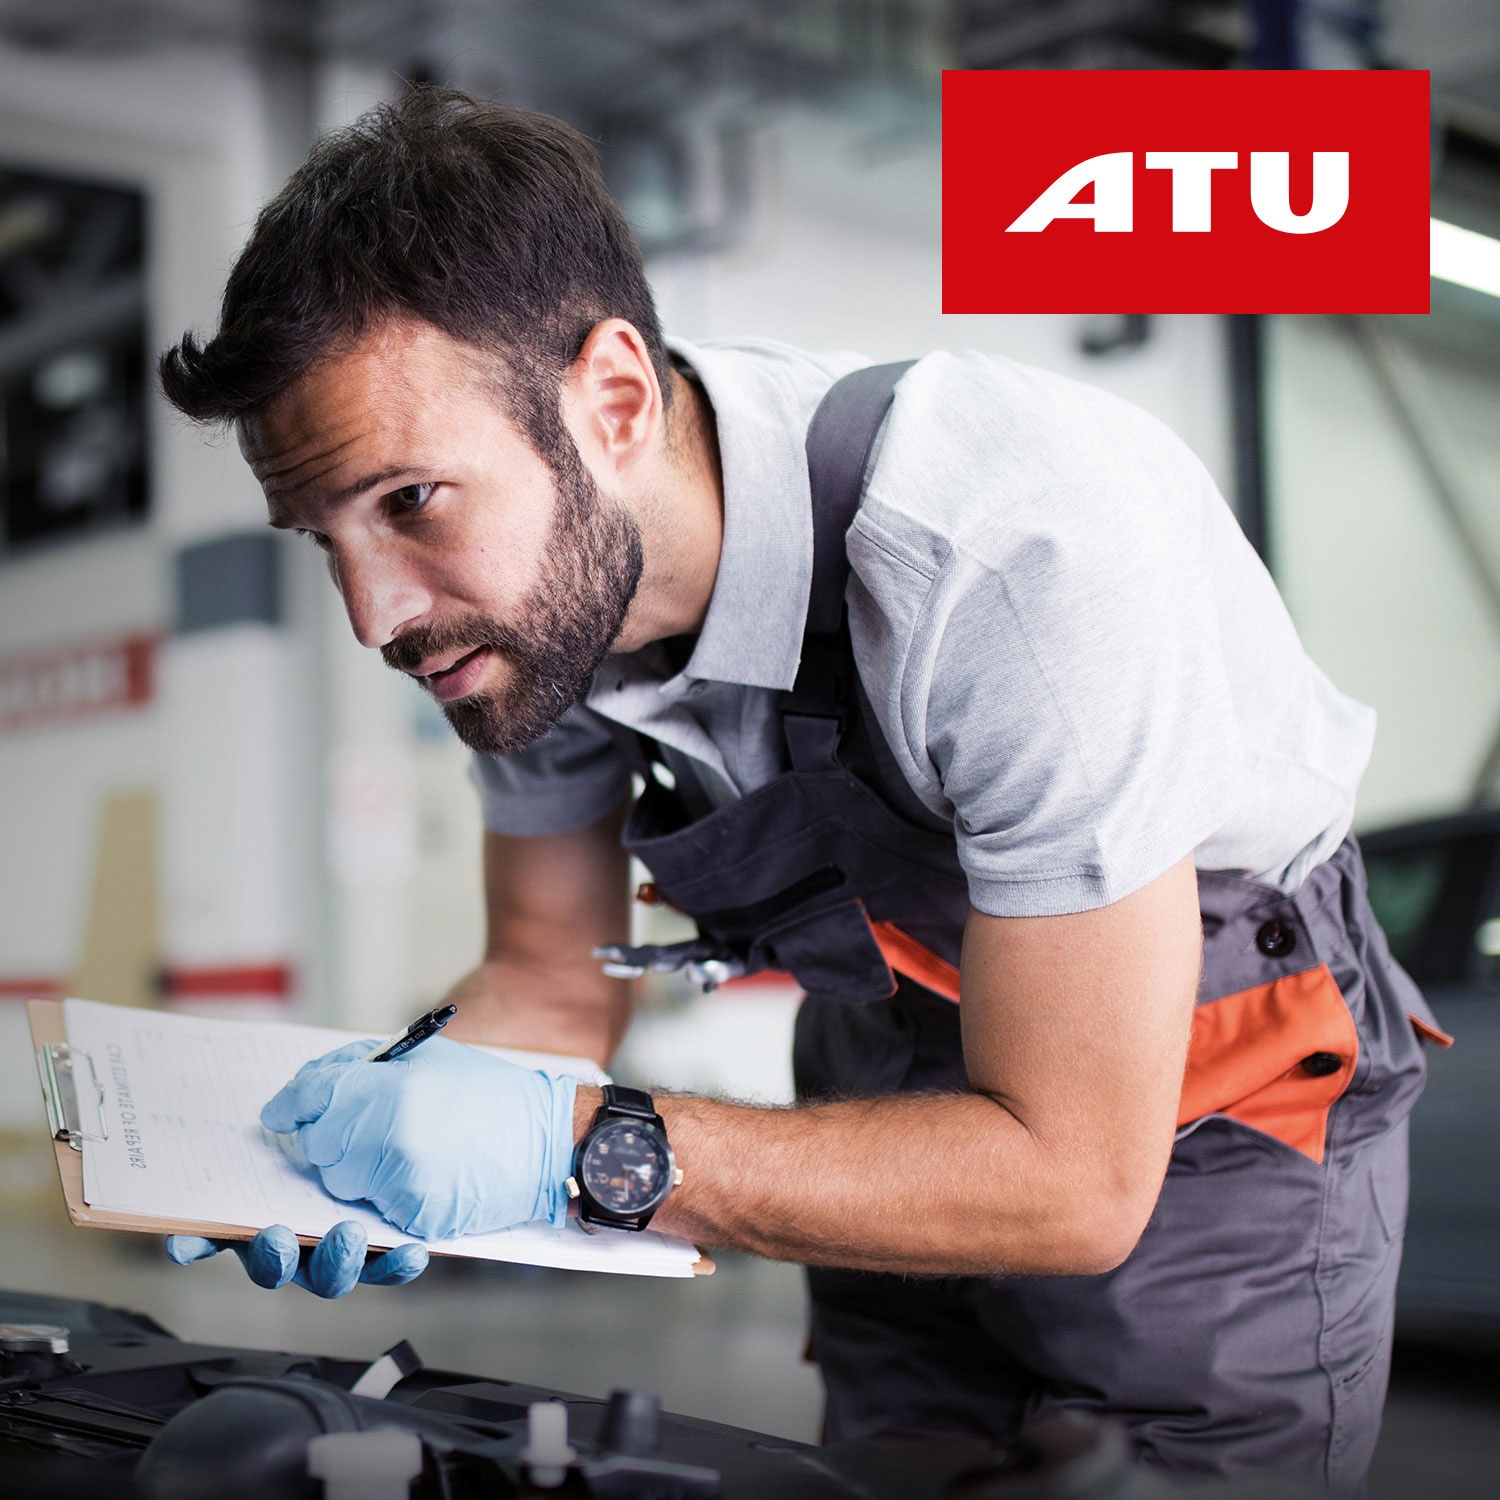 ATU Premium Mobilitäts-Check